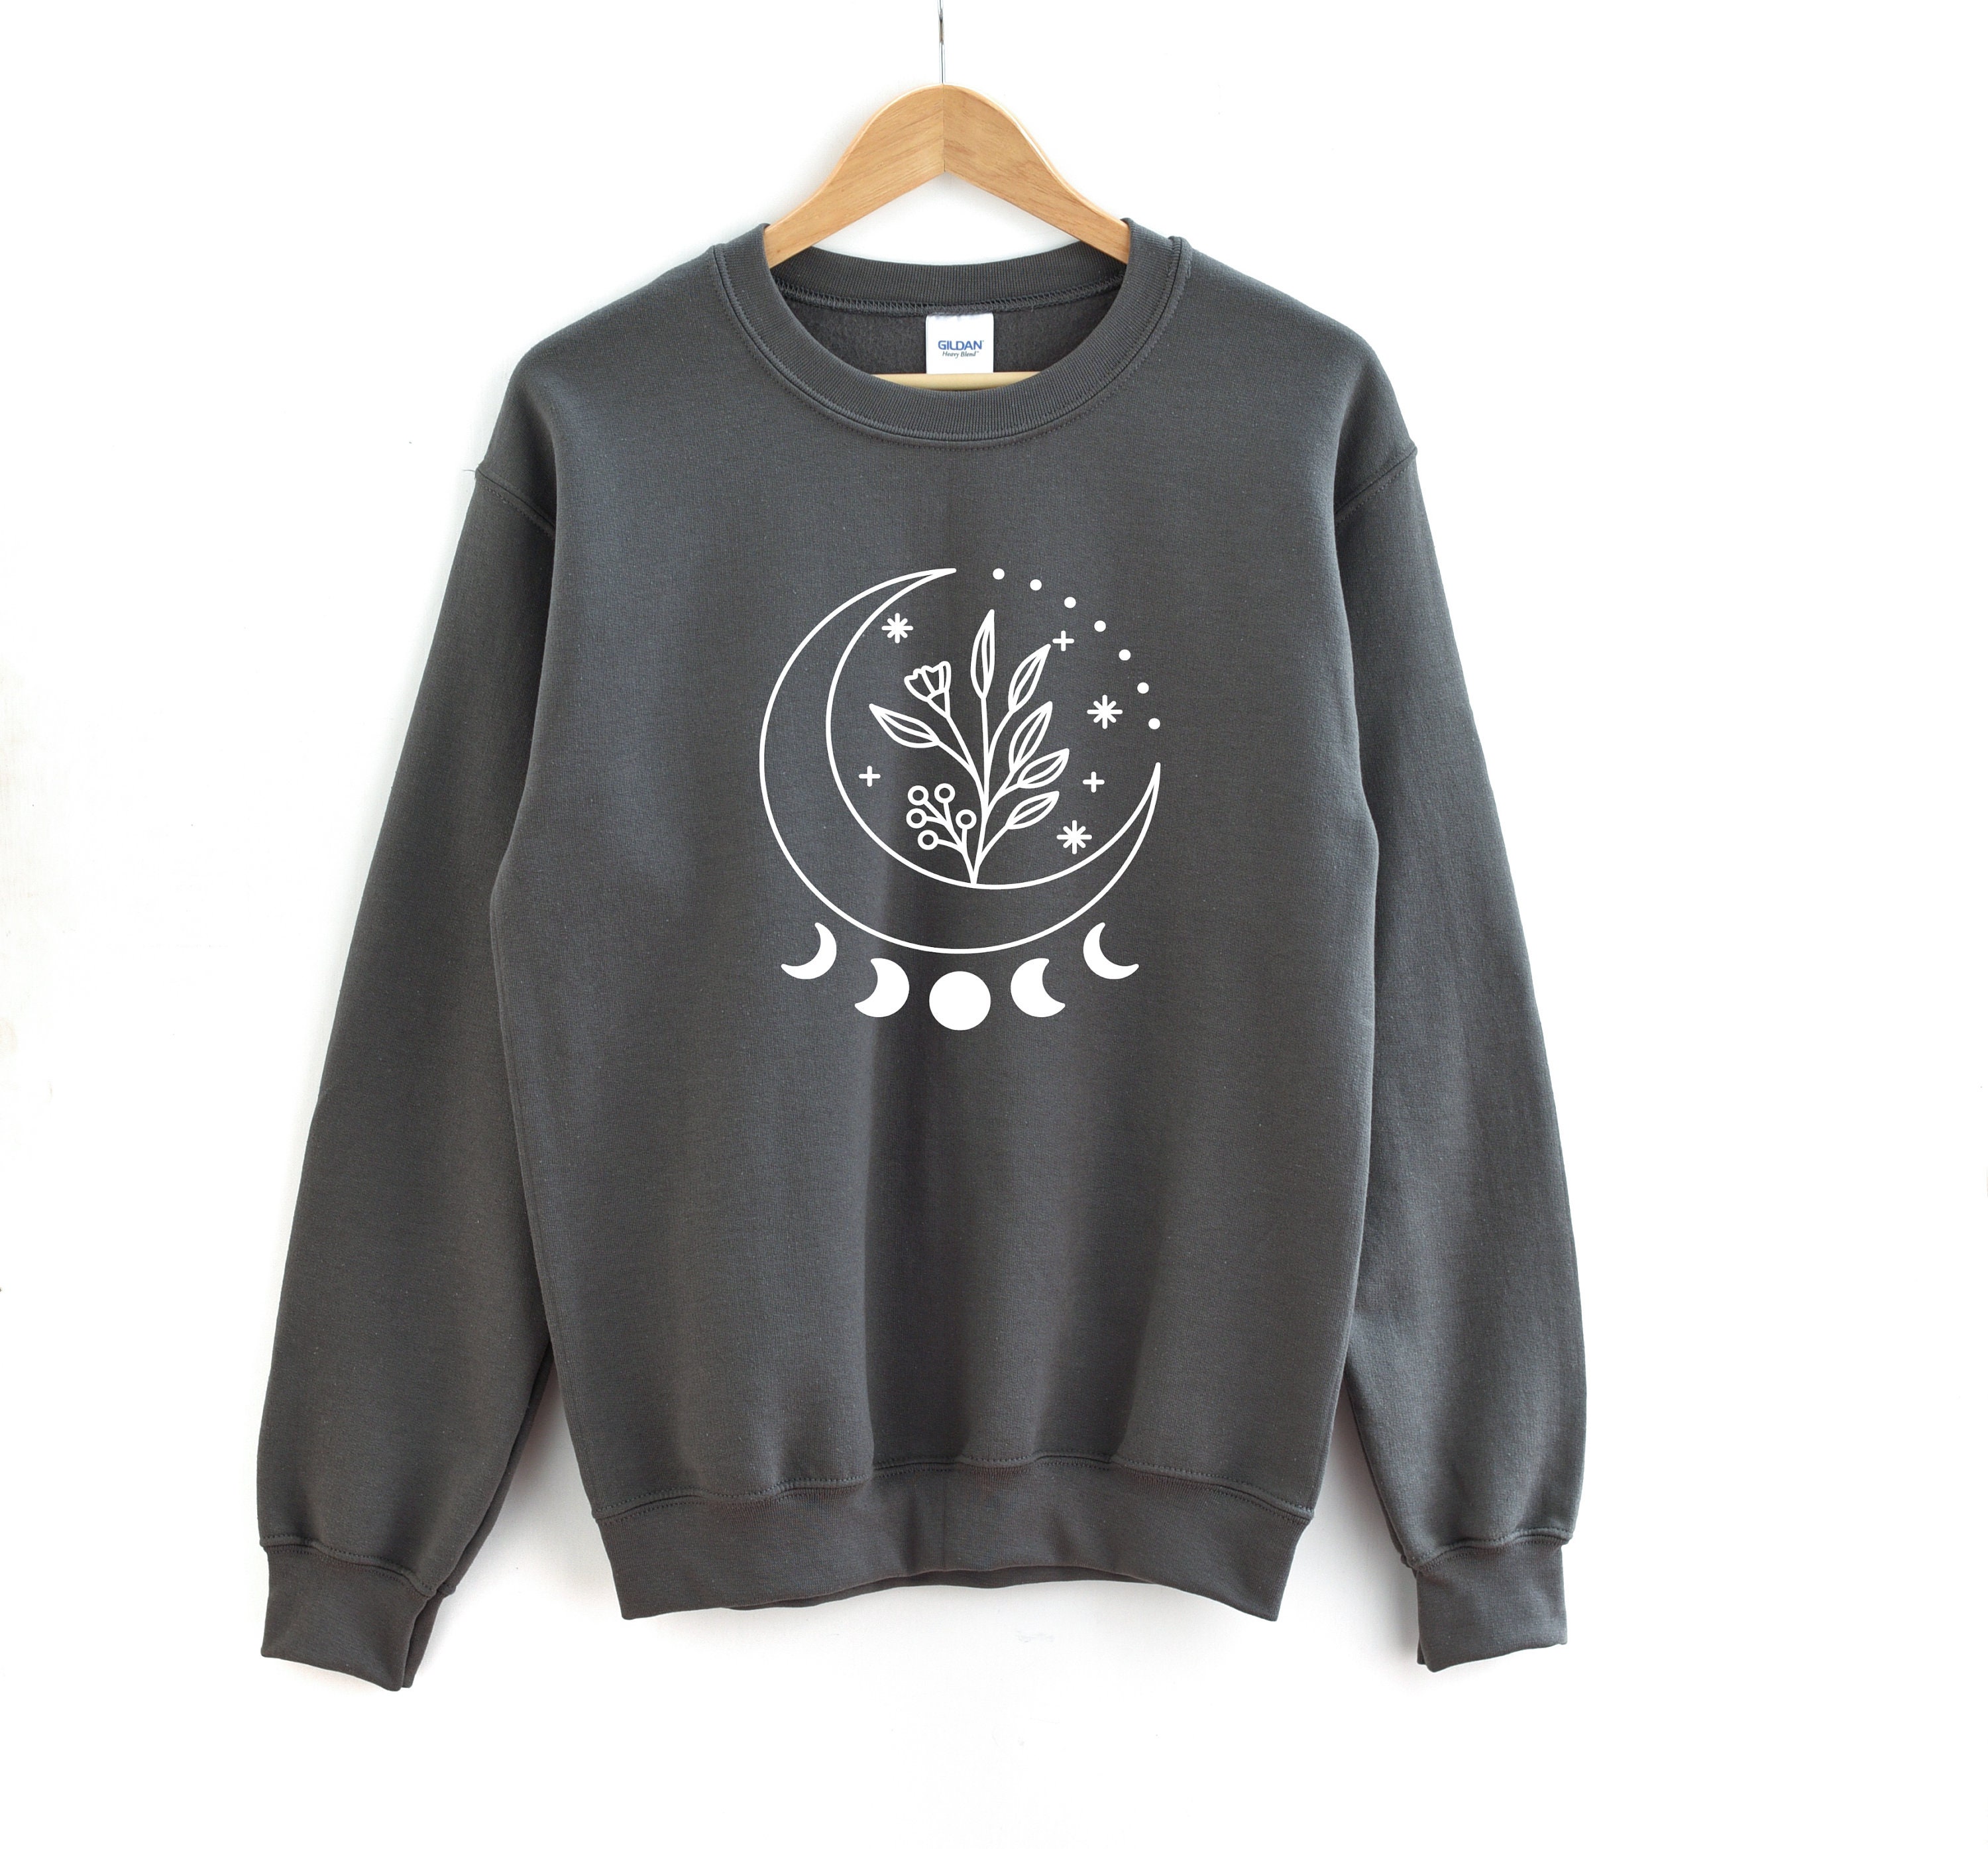 Moon Phase Sweater Lunar Sweatshirt Personalized Blouse New - Etsy UK